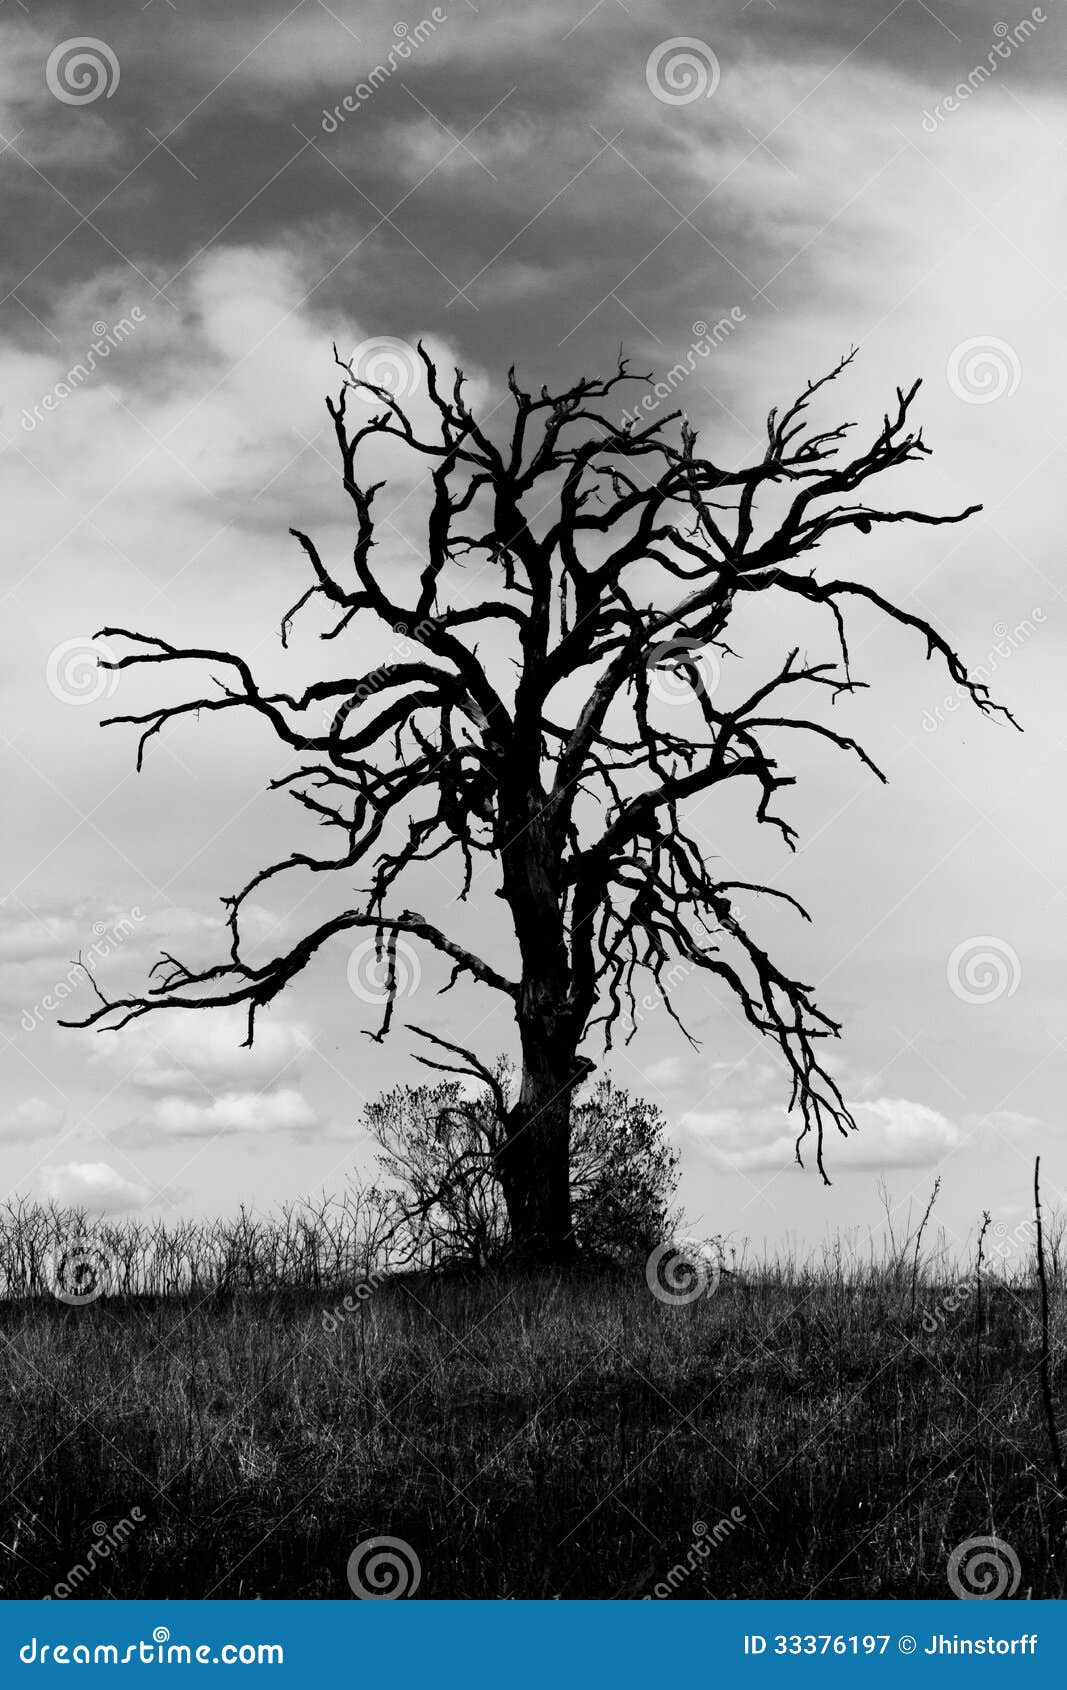 Spooky Old Tree